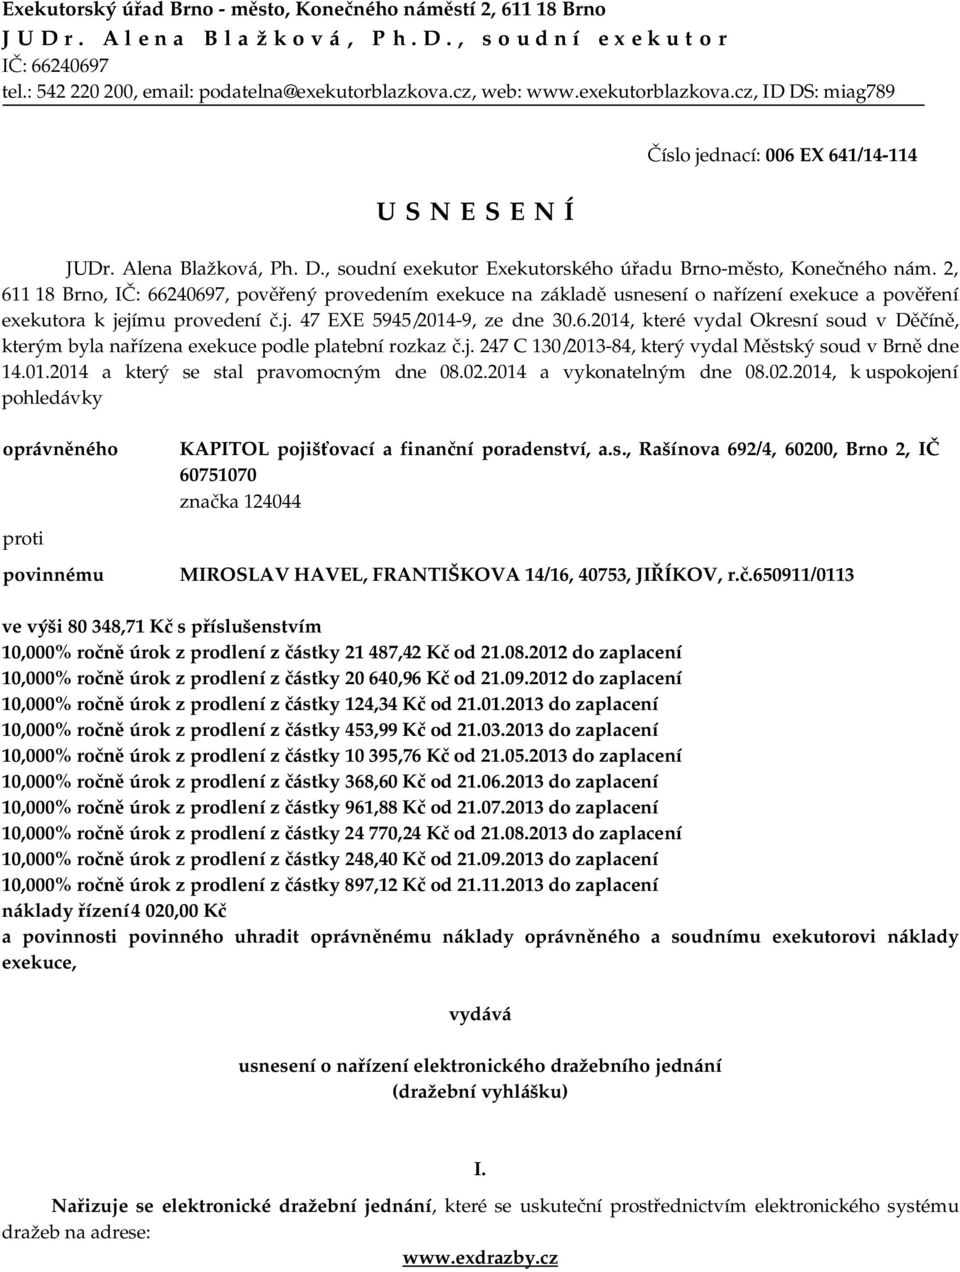 2, 611 18 Brno, IČ: 66240697, pověřený provedením exekuce na základě usnesení o nařízení exekuce a pověření exekutora k jejímu provedení č.j. 47 EXE 5945/2014-9, ze dne 30.6.2014, které vydal Okresní soud v Děčíně, kterým byla nařízena exekuce podle platební rozkaz č.